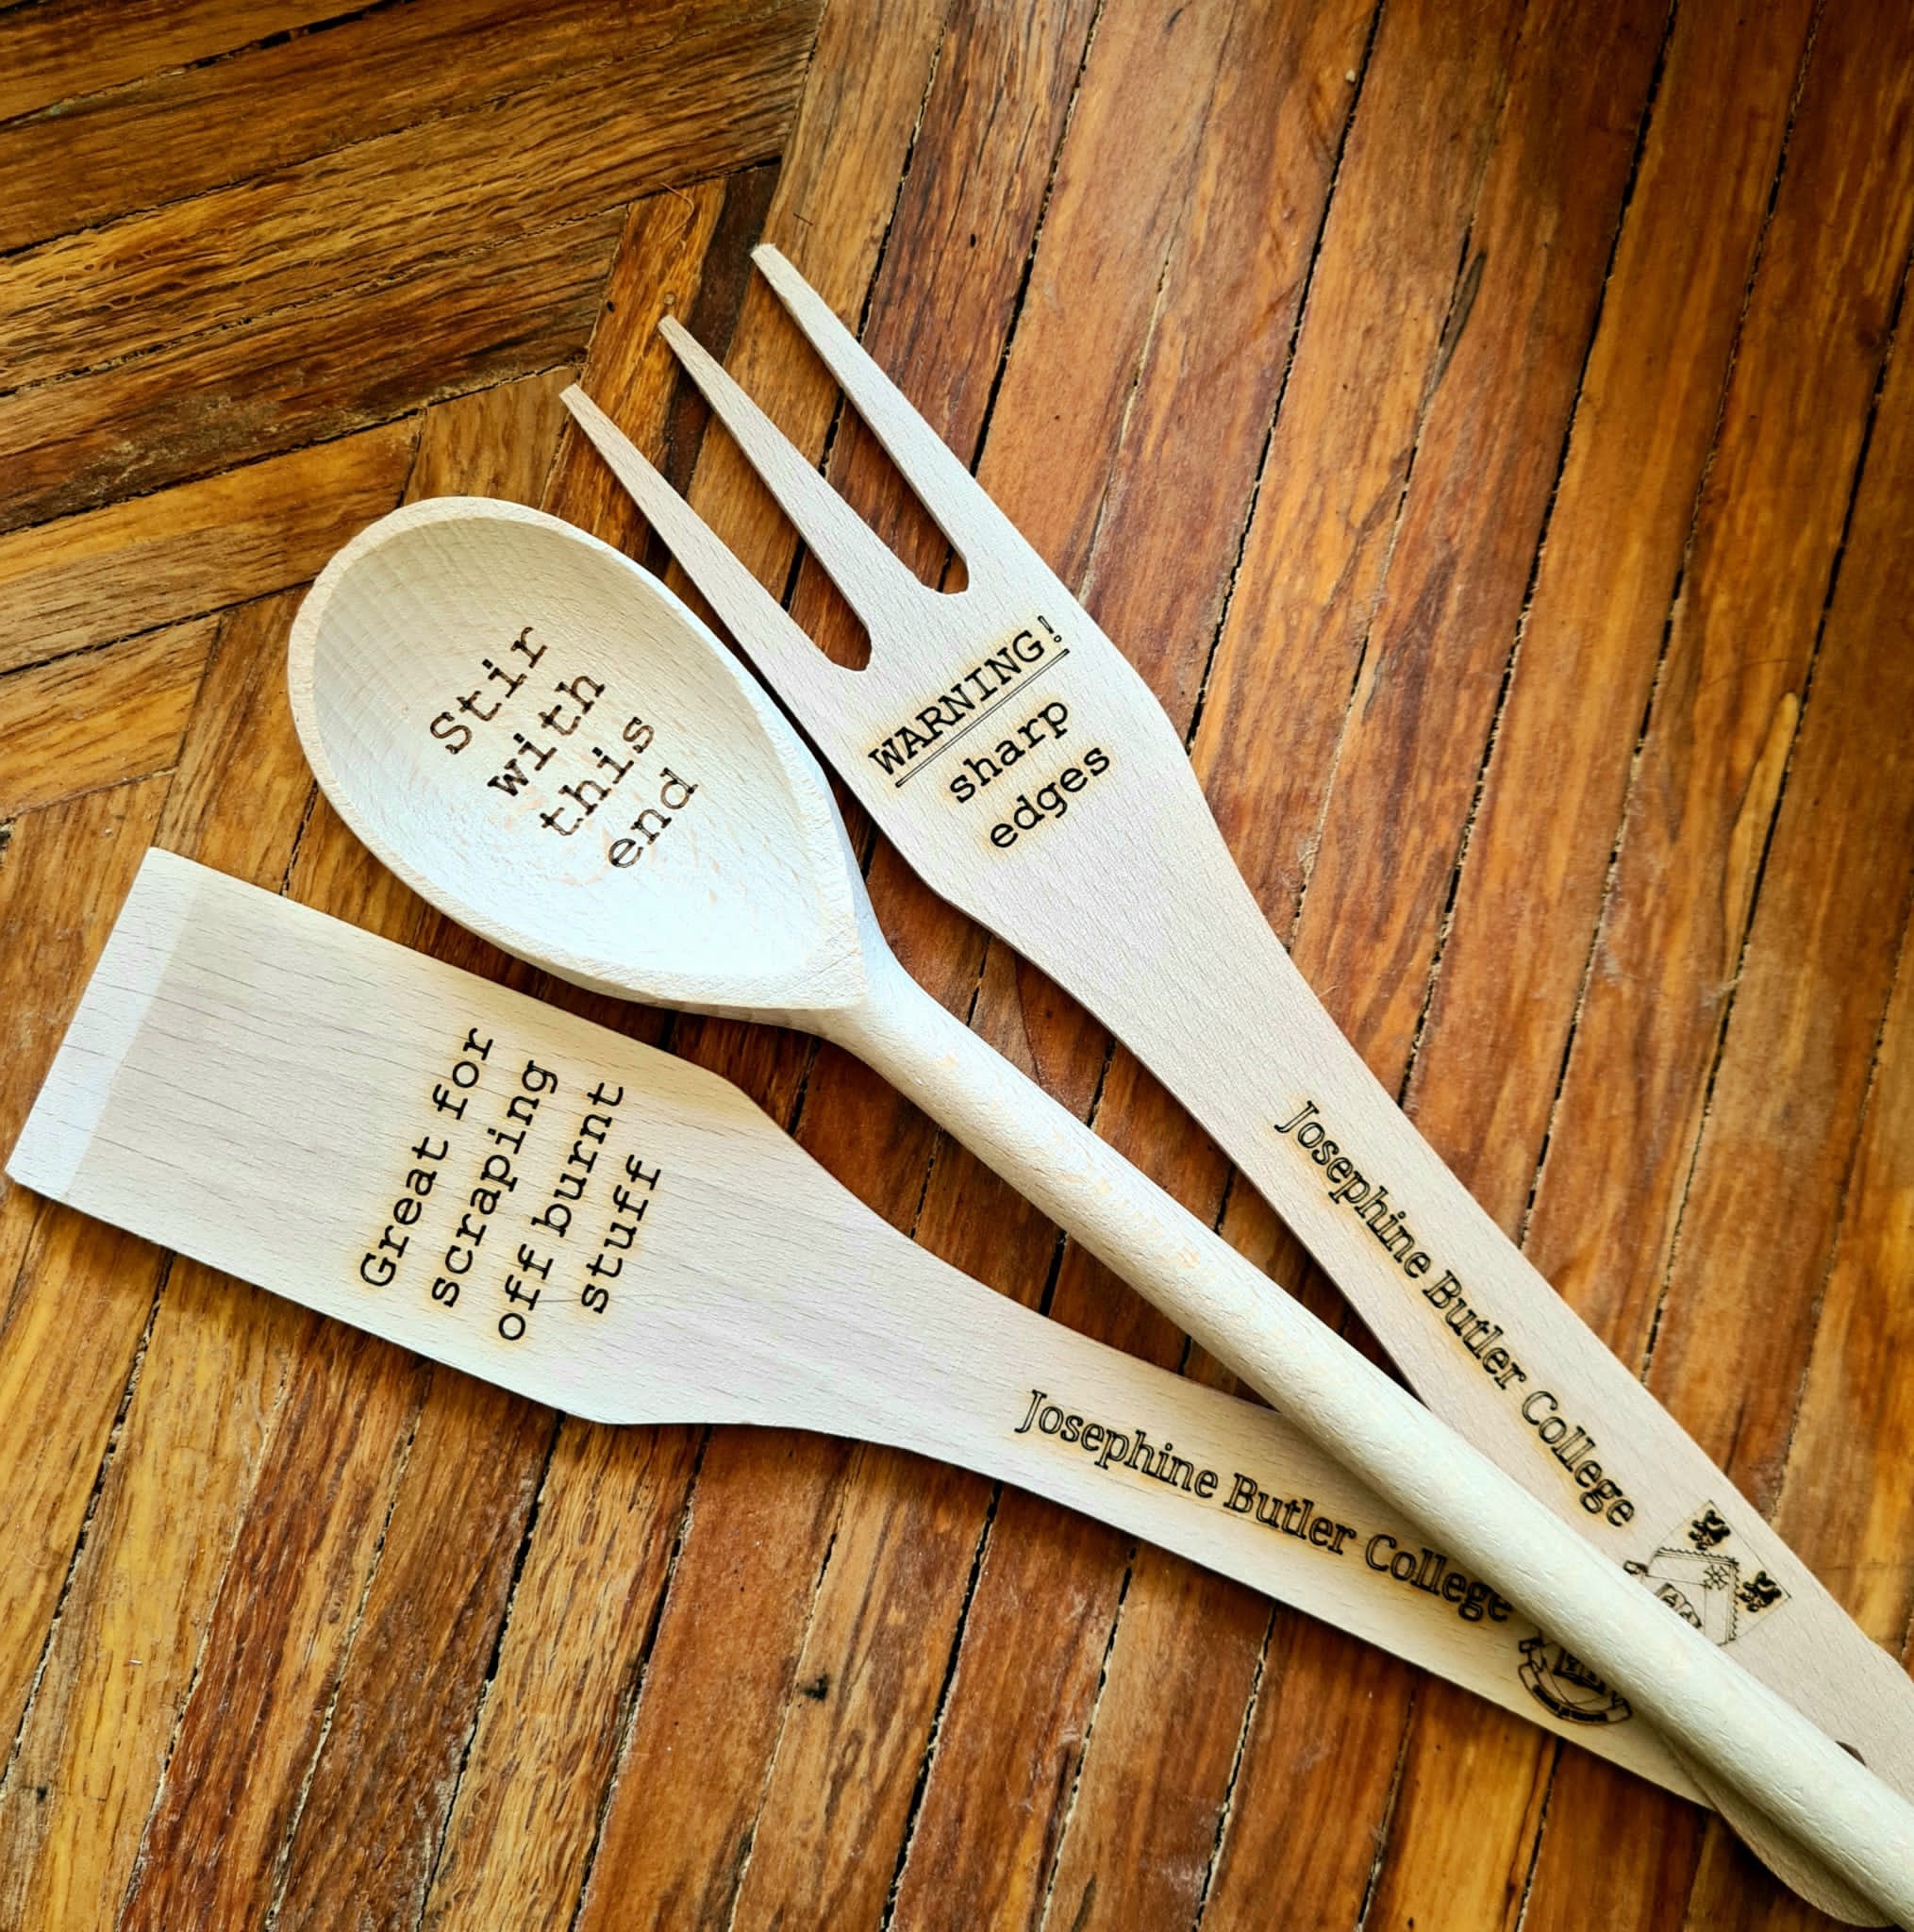 Josephine Butler College kitchen utensils, set of 3